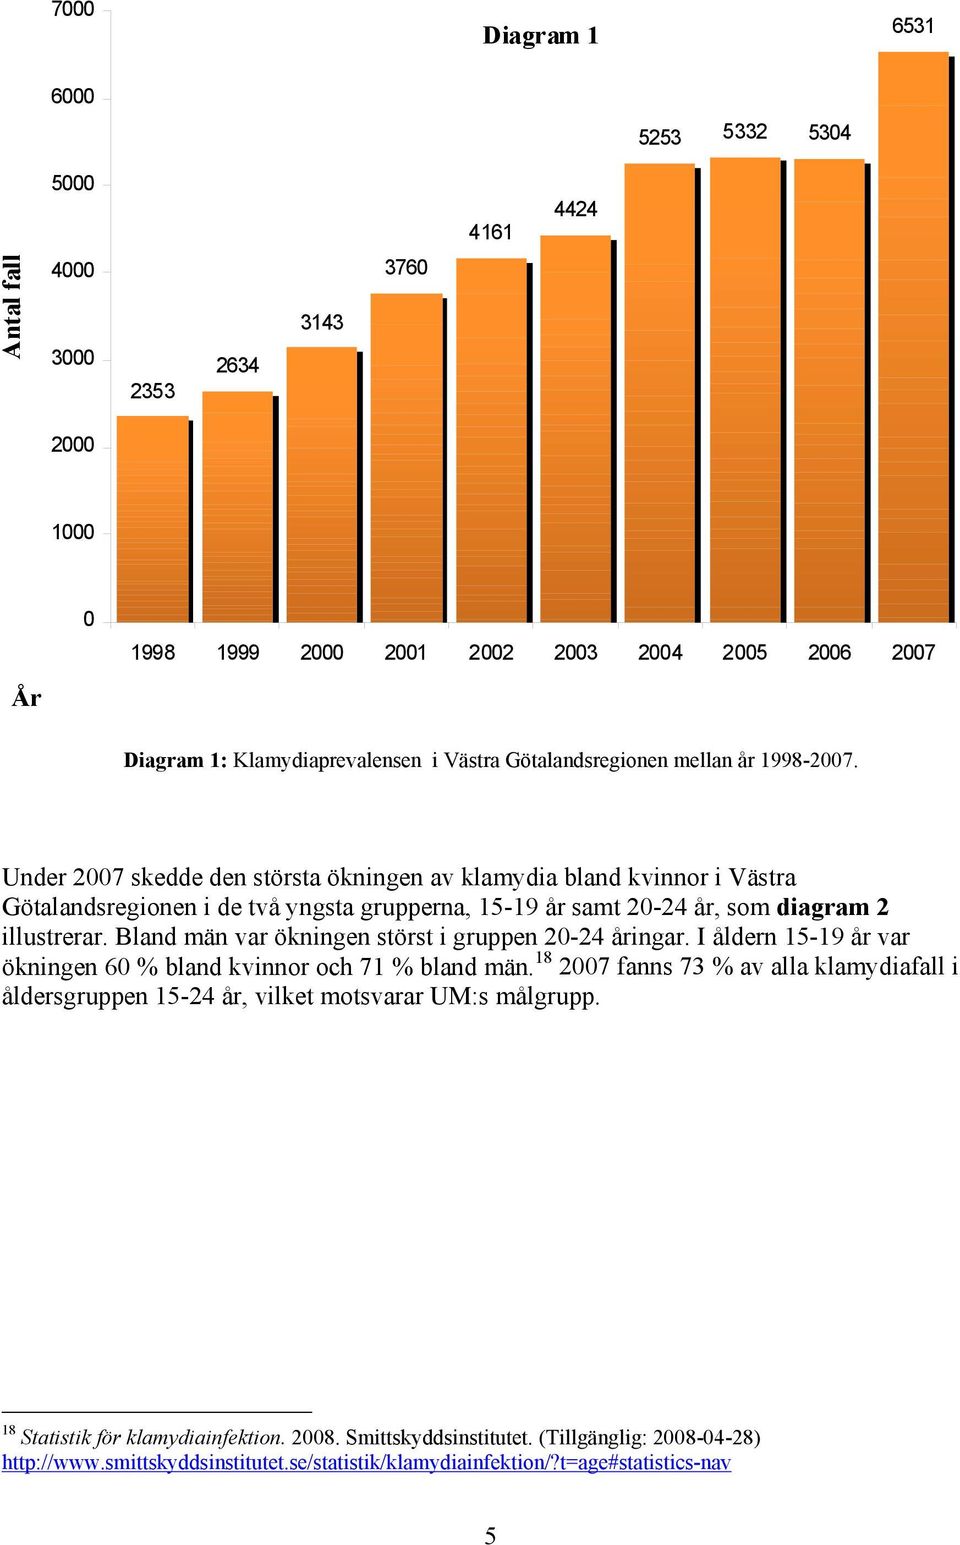 Under 2007 skedde den största ökningen av klamydia bland kvinnor i Västra Götalandsregionen i de två yngsta grupperna, 15-19 år samt 20-24 år, som diagram 2 illustrerar.